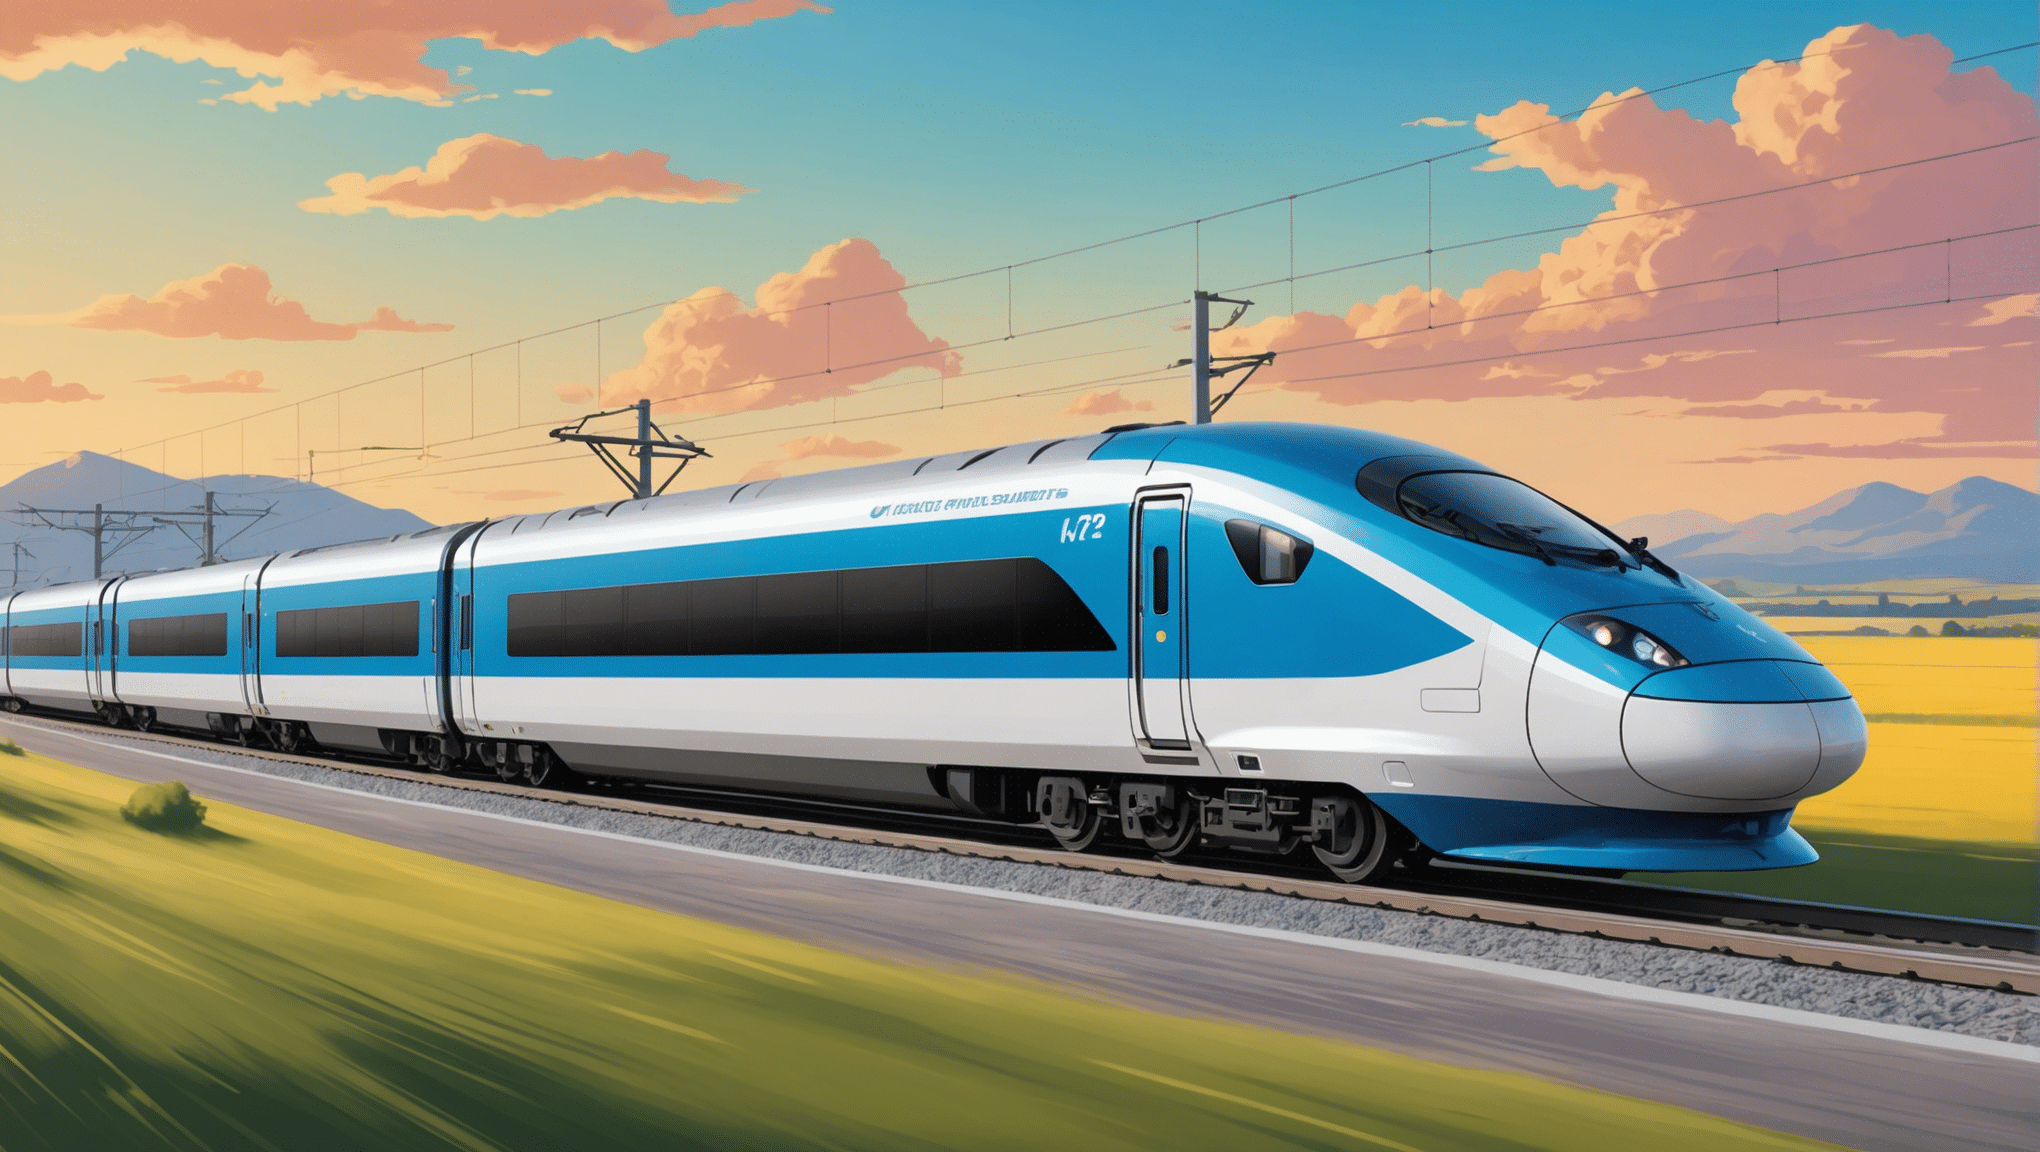 اكتشف الرحلات الأساسية على متن القطارات عالية السرعة لرحلة لا تنسى.